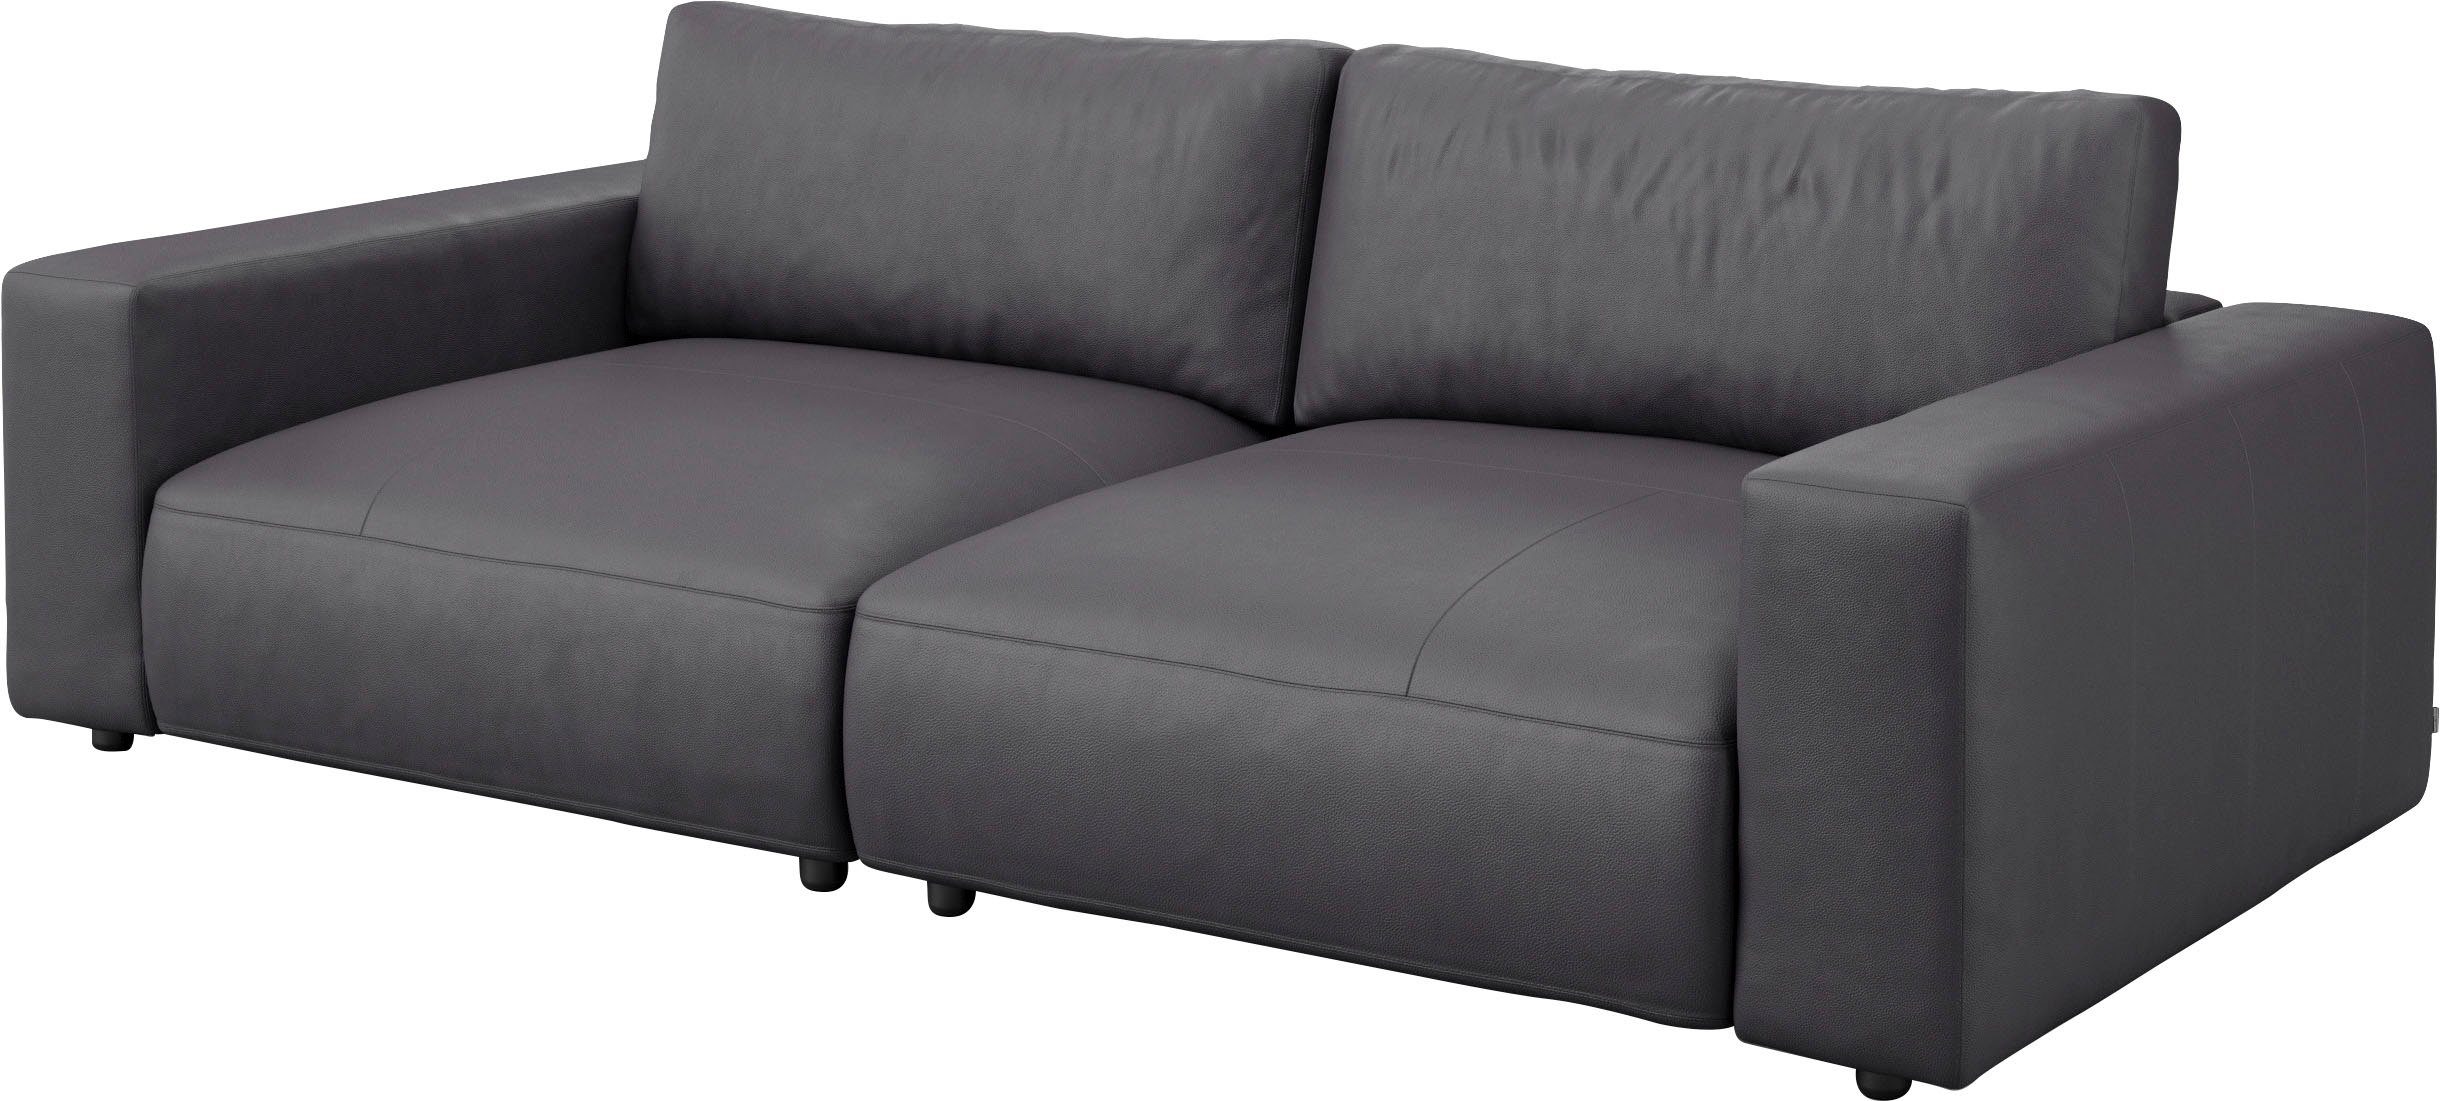 M Qualitäten Musterring Big-Sofa by und 4 LUCIA, 2,5-Sitzer unterschiedlichen GALLERY in vielen Nähten, branded